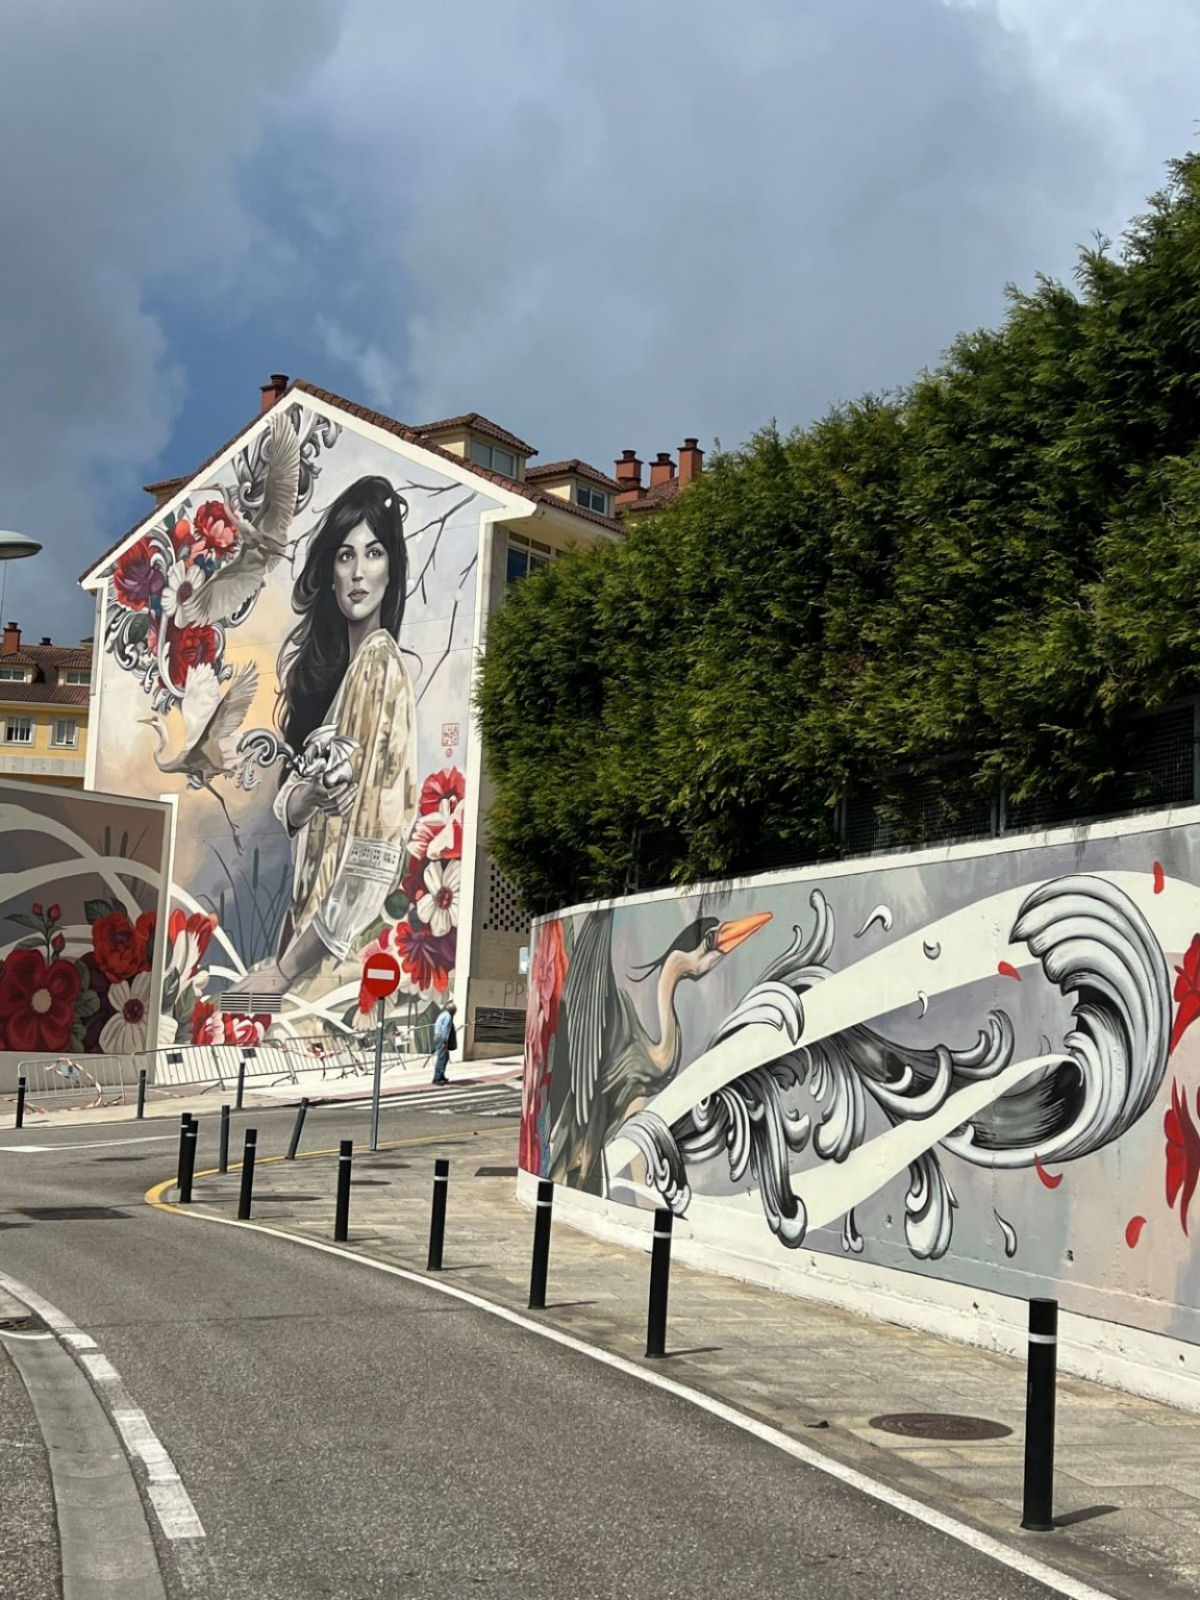 Impressionante mural na Espanha  uma celebrao da natureza e da feminilidade